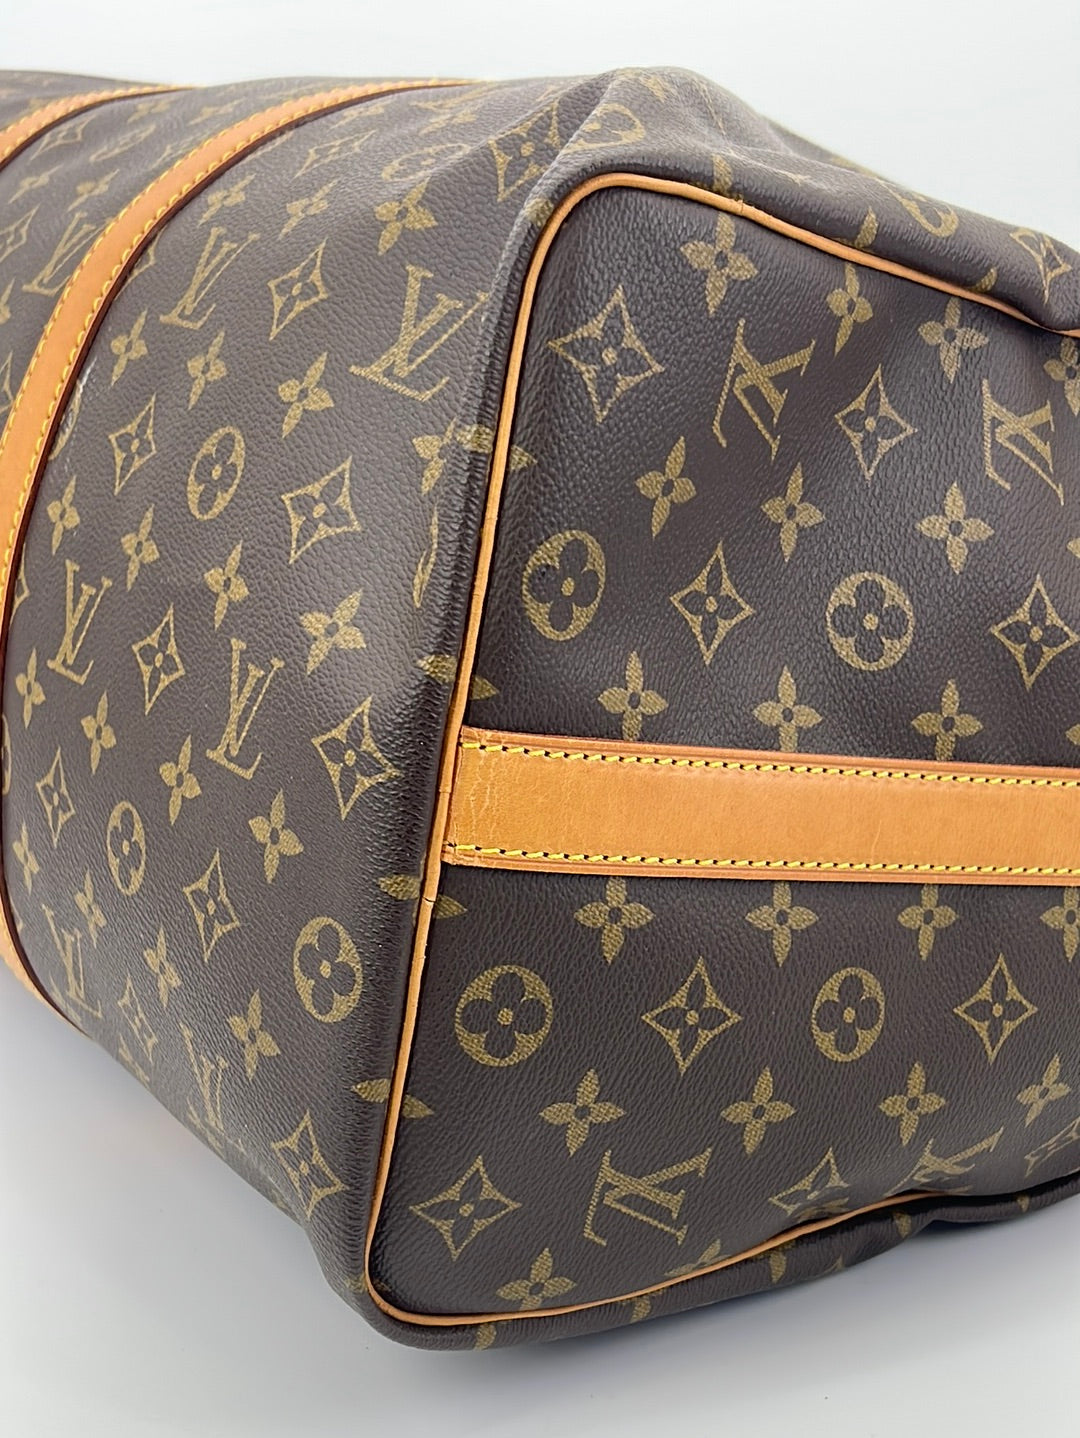 LTD 2019 Louis Vuitton Bandouliére 50 Duffle Bag sold at auction